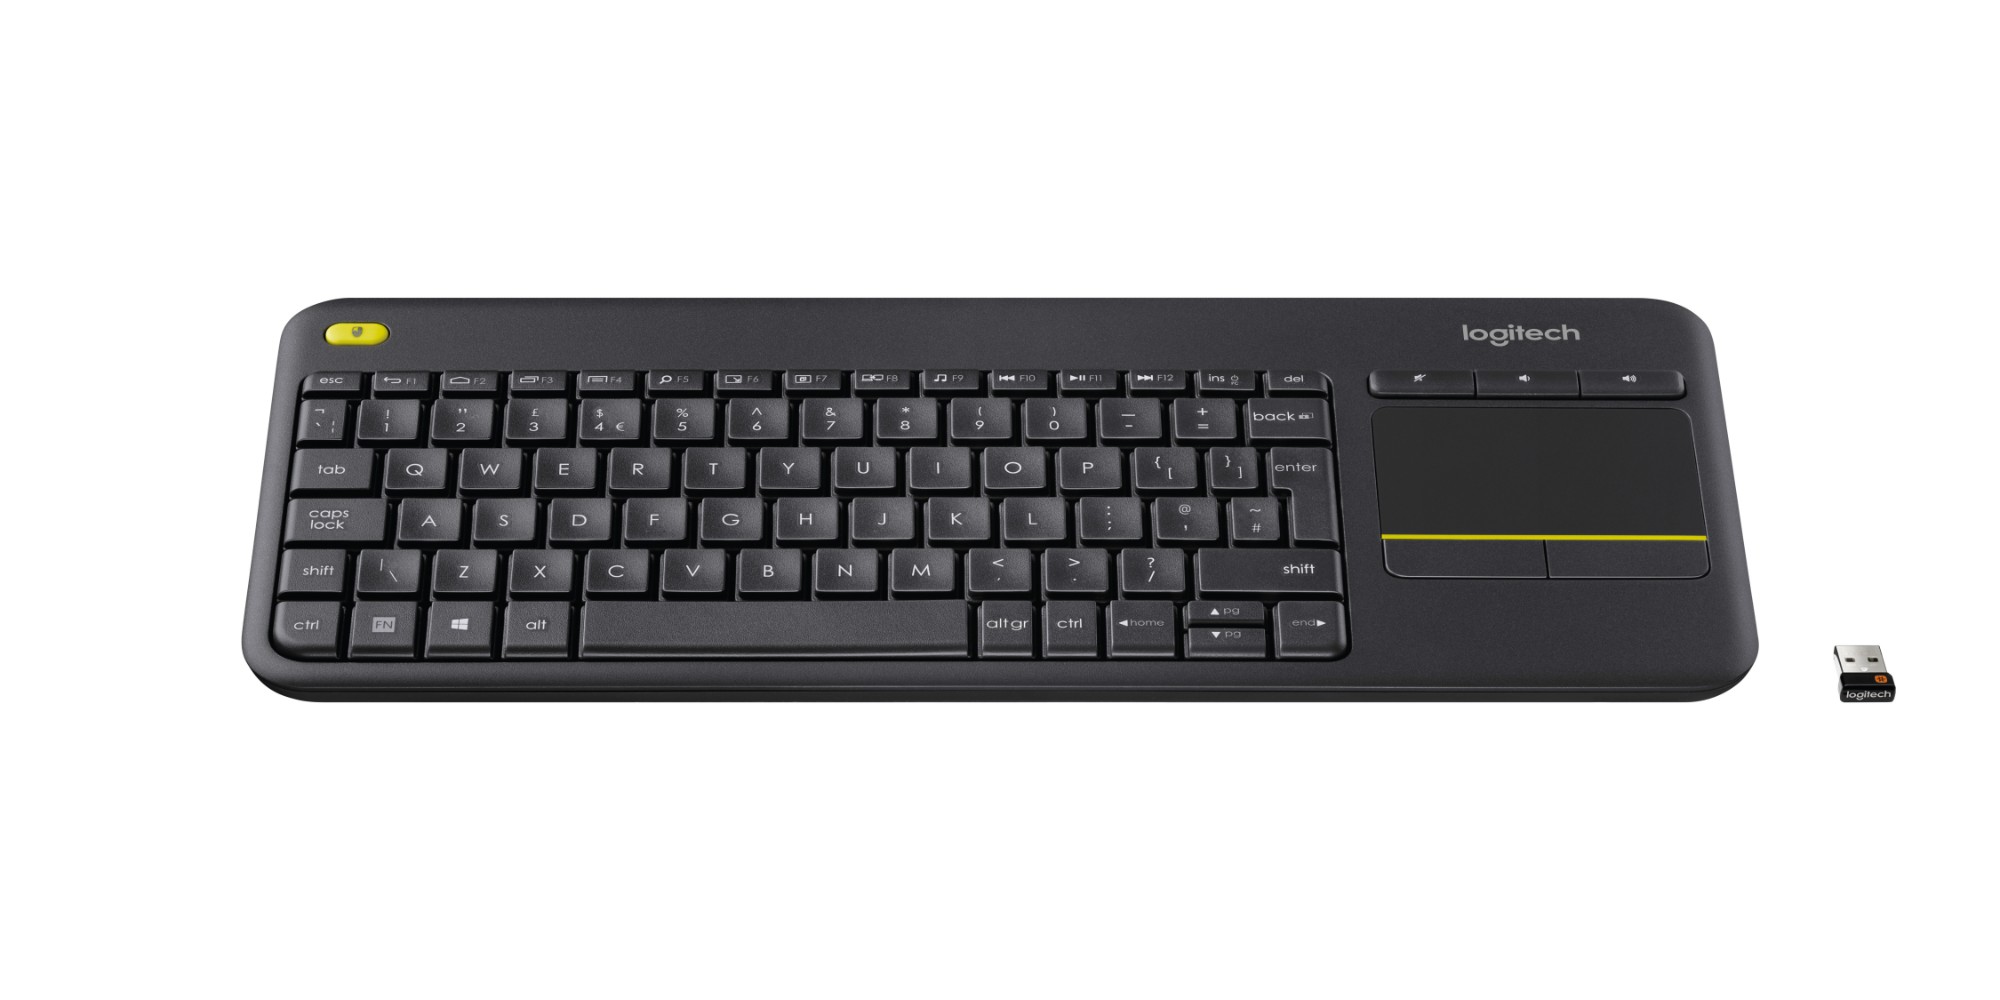 Logitech K400 Plus keyboard RF Wireless AZERTY Belgian Black